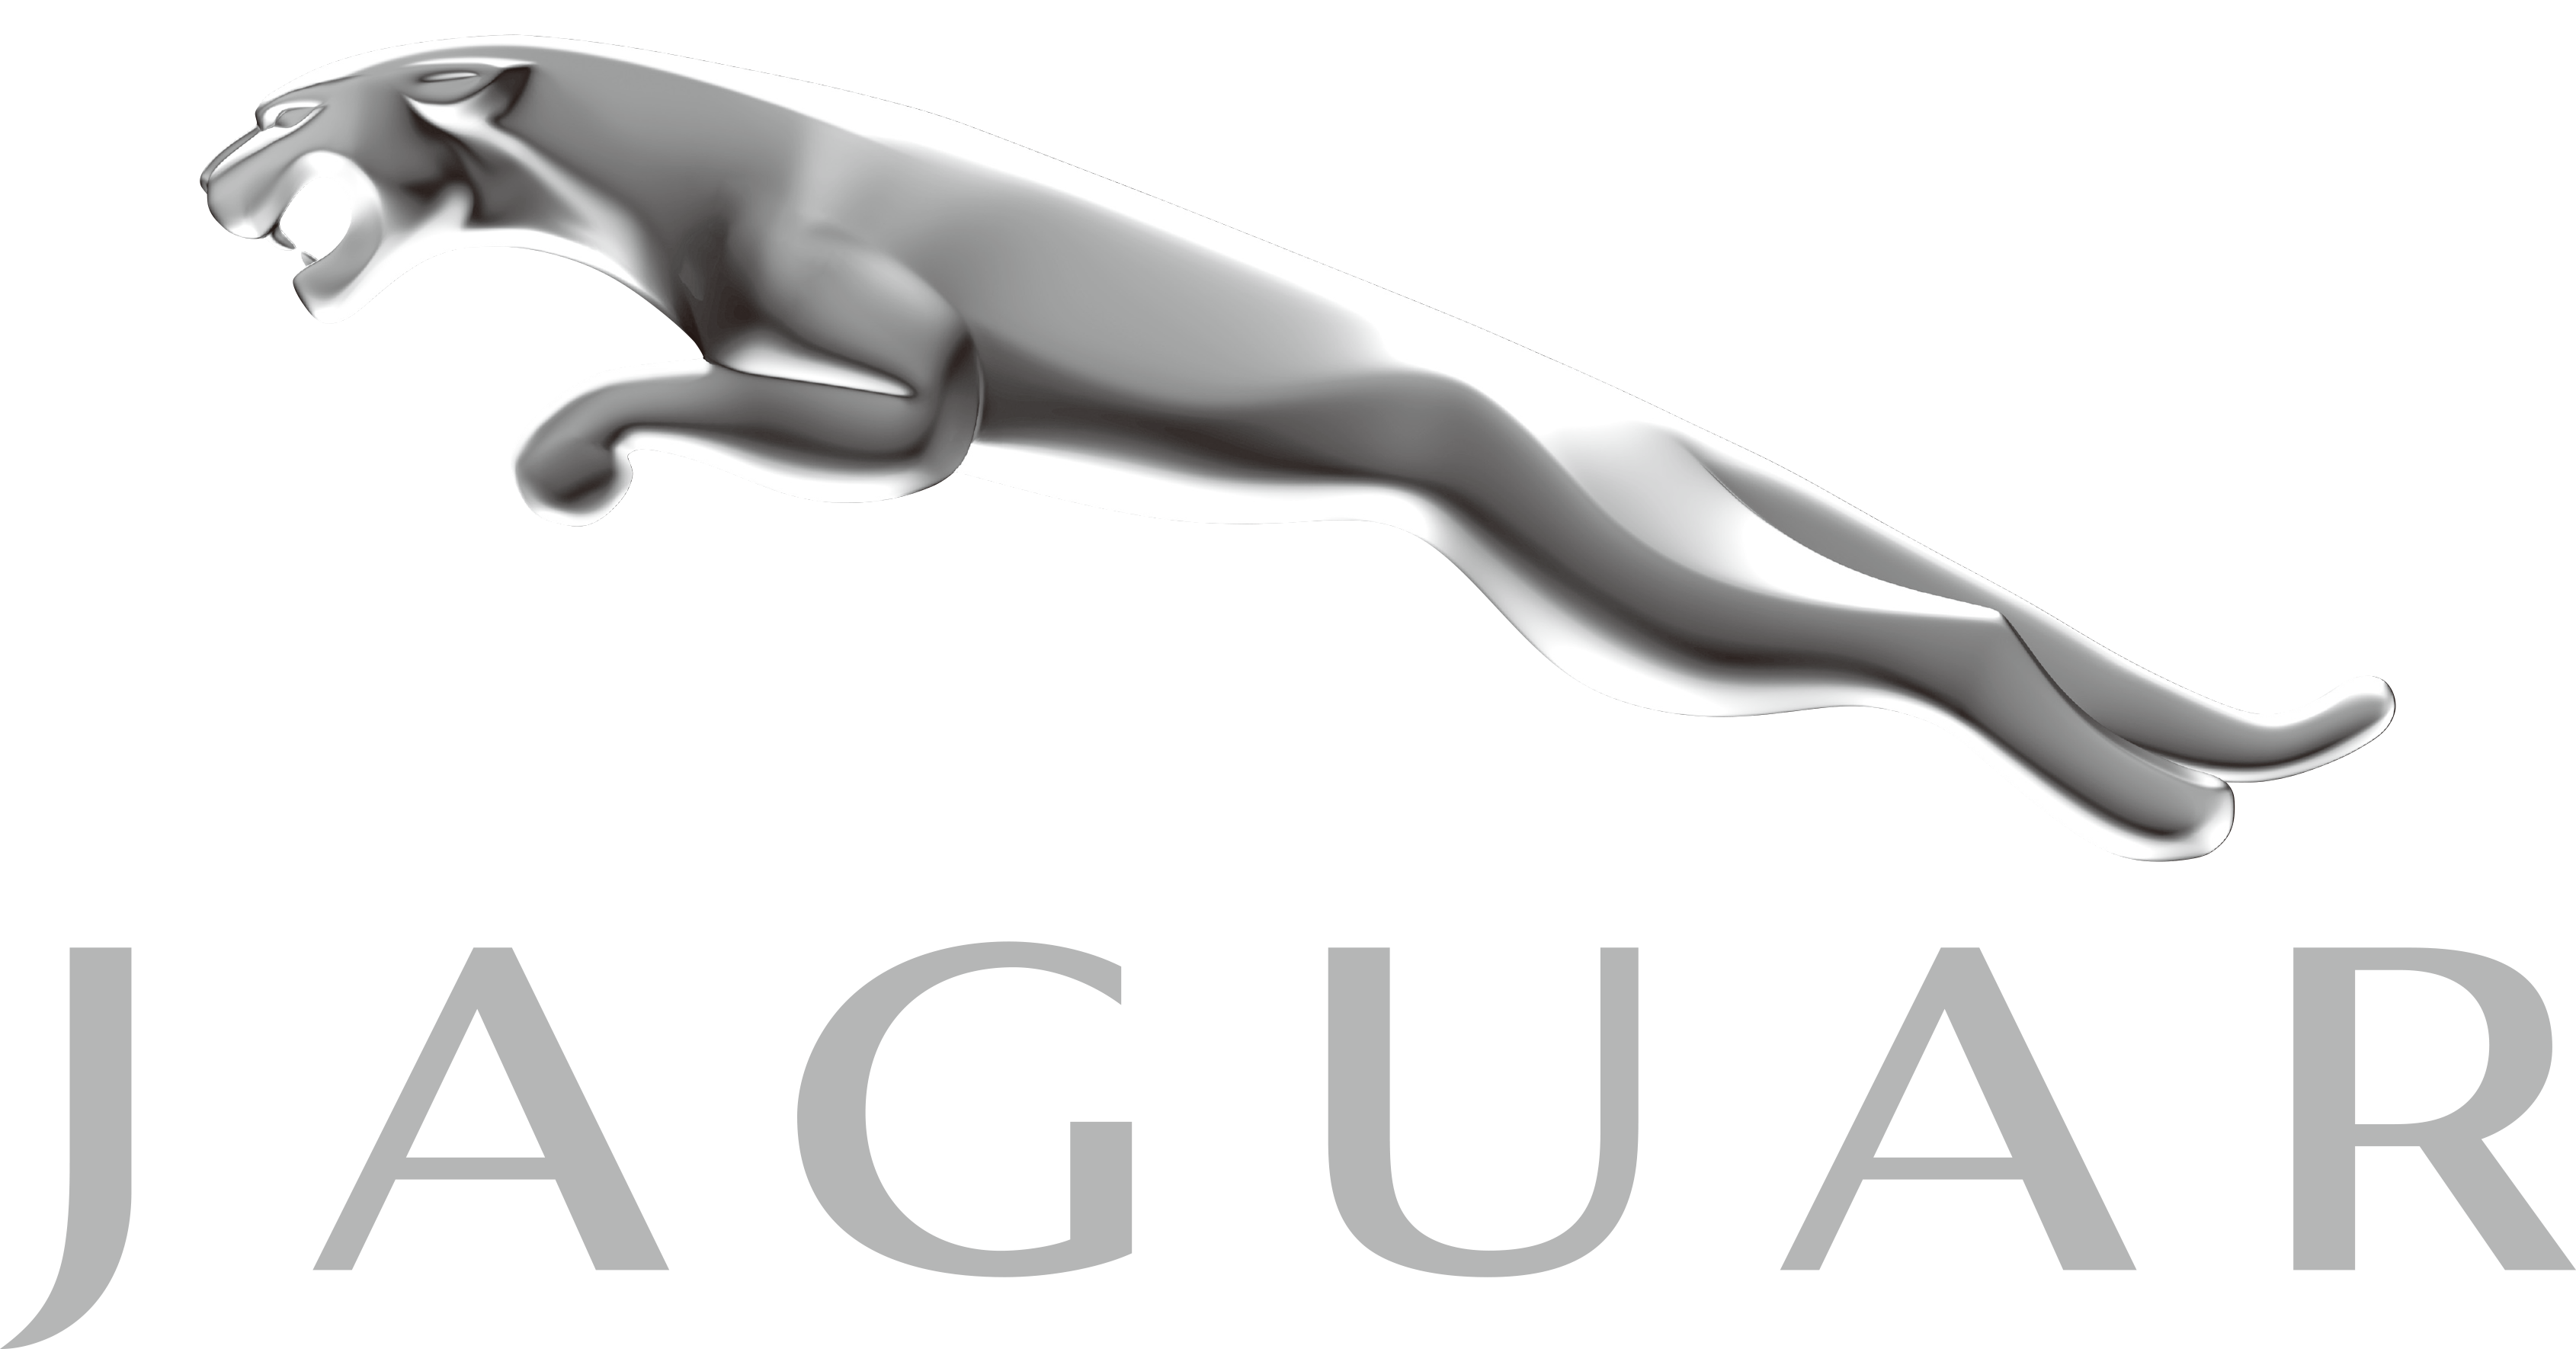 Jaguar Transparent Emblem